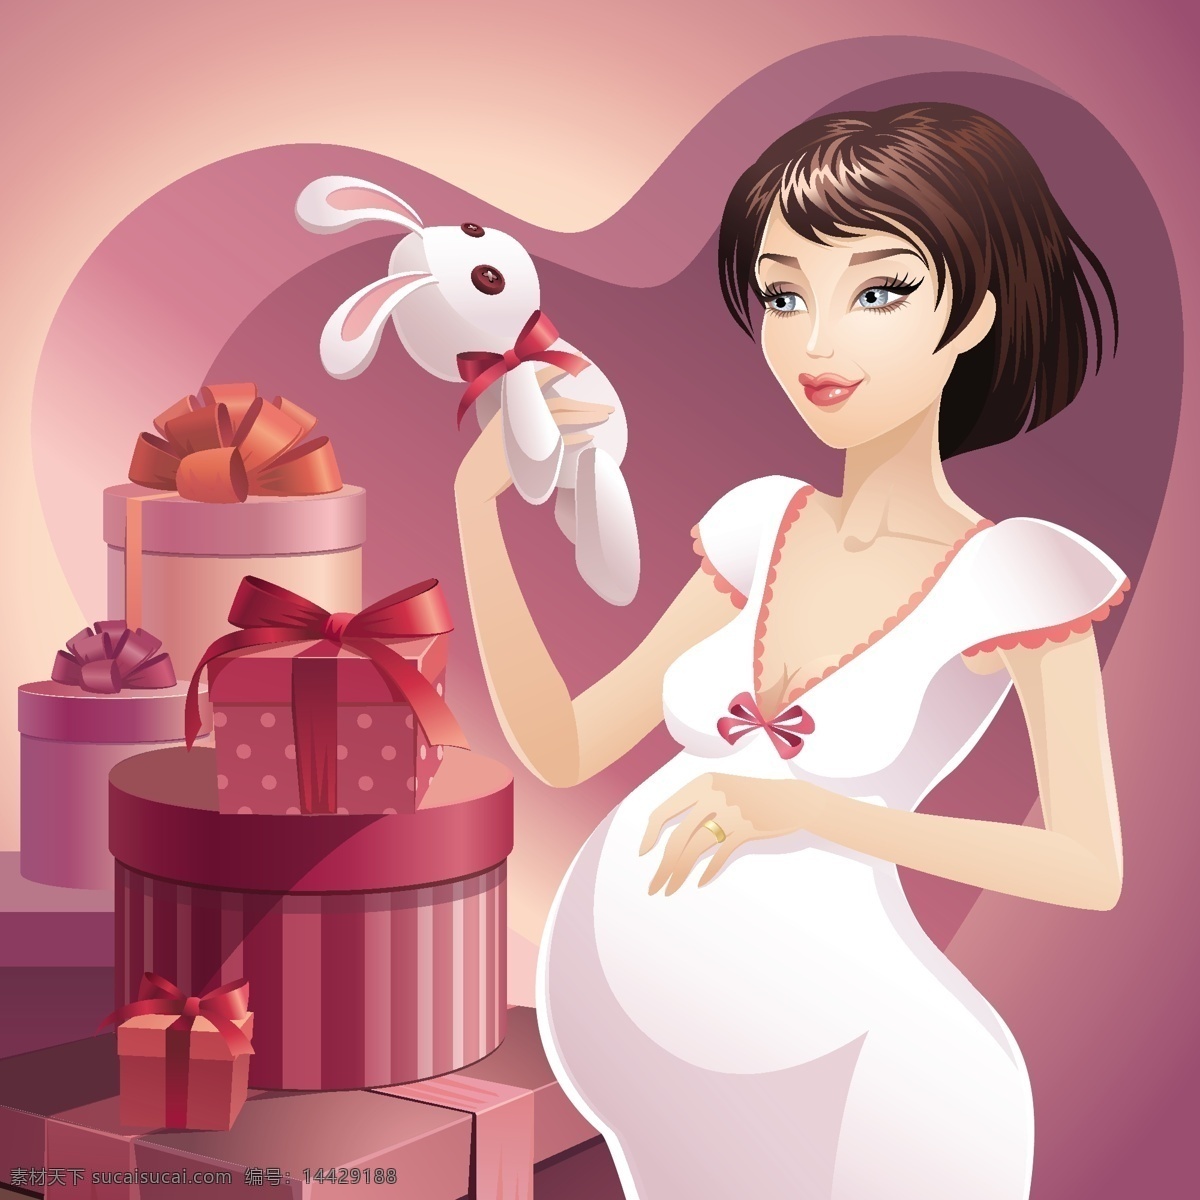 背景 妇女女性 卡通 快乐 礼盒 女孩剪影 矢量人物 手绘 小白兔 幸福 孕妇 矢量 模板下载 幸福的孕妇 psd源文件